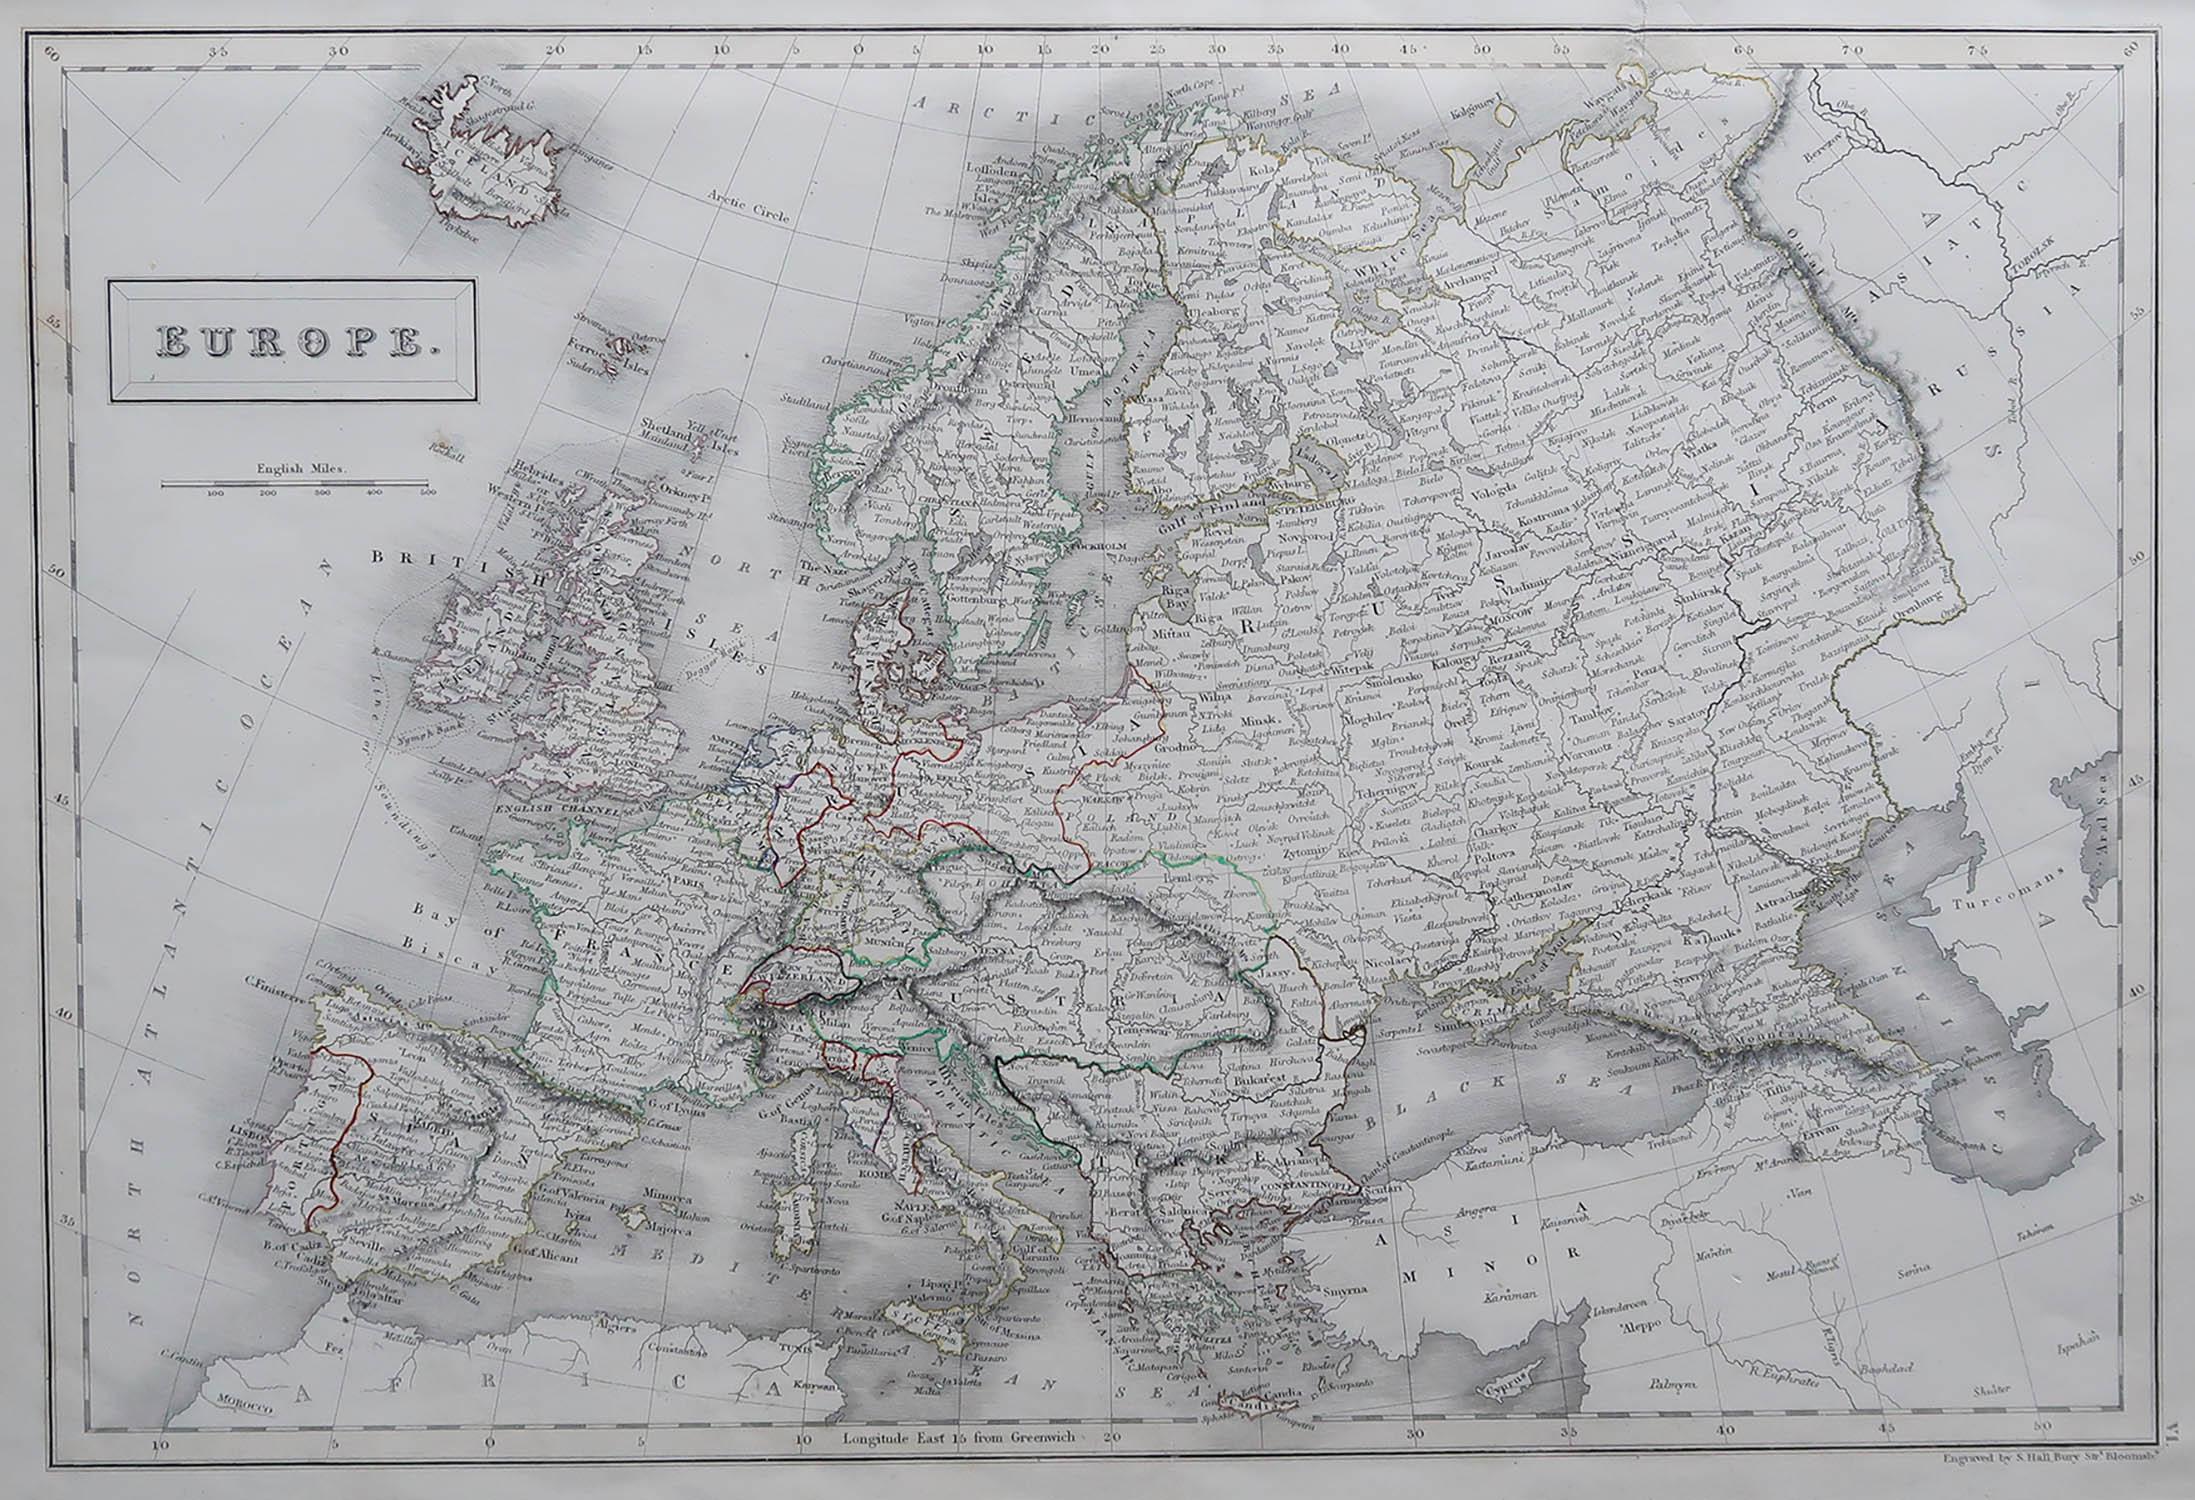 Tolle Karte von Europa

Gezeichnet und gestochen von Sidney Hall

Stahlstich 

Original-Farbumriss

Herausgegeben von A & C Black. 1847

Ungerahmt

Kostenloser Versand.

